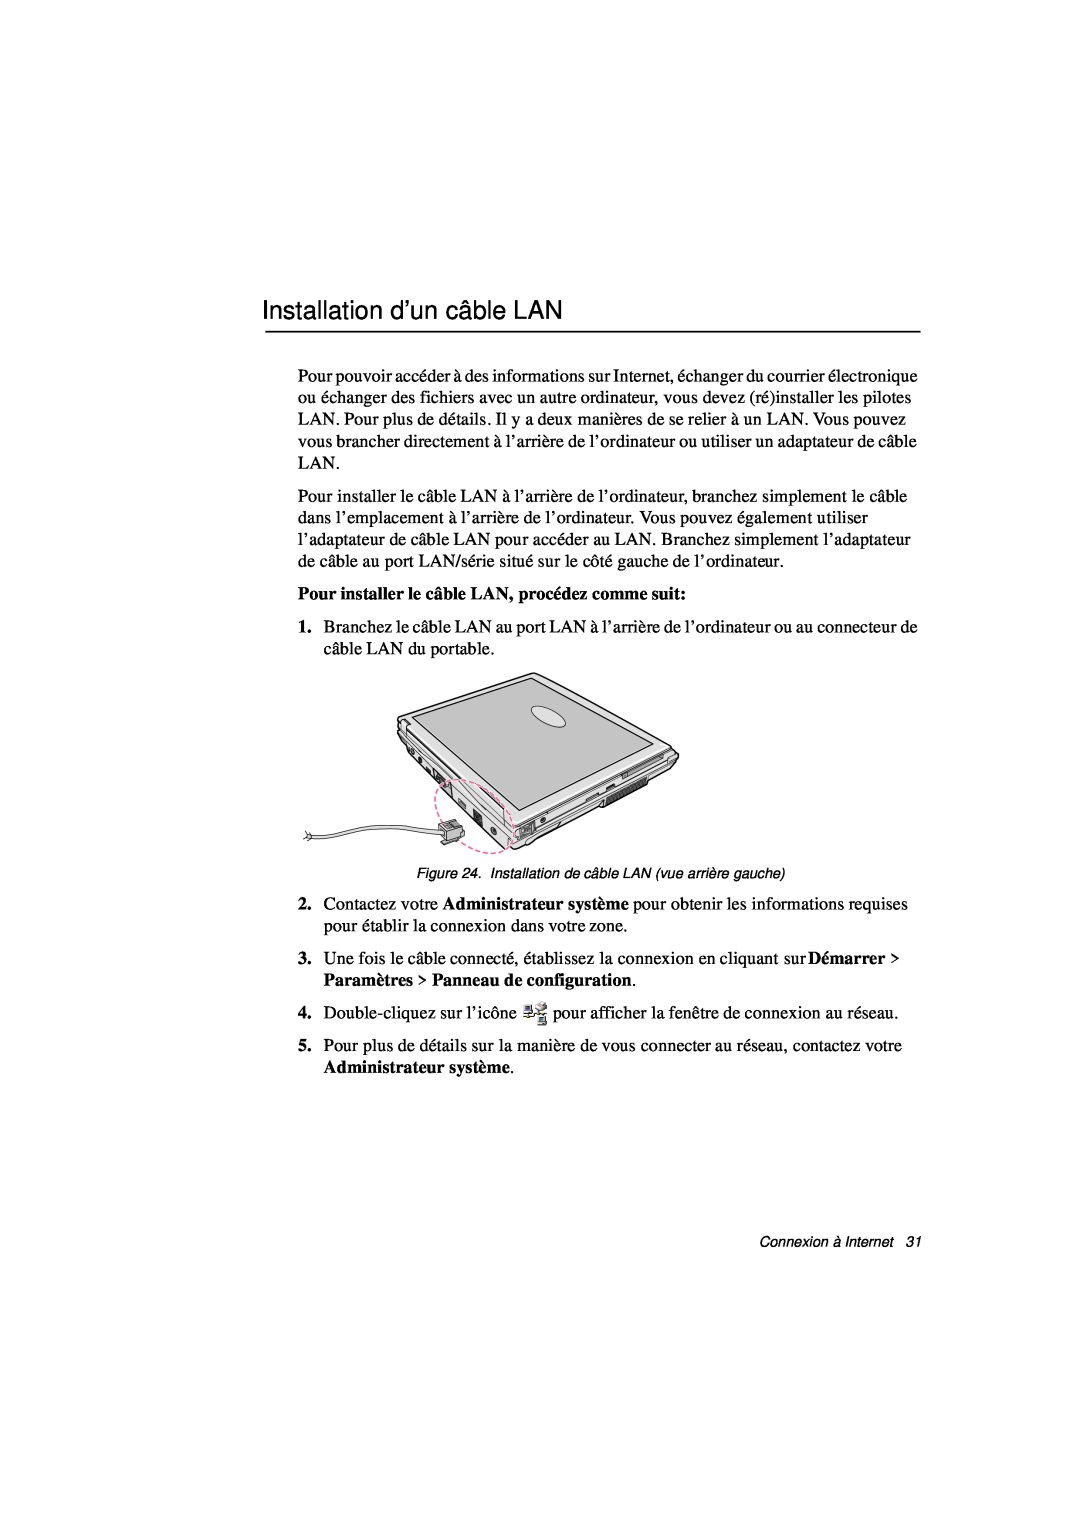 Samsung N760GR2008/SEF, N760PJ2008/SEF manual Installation d’un câble LAN, Pour installer le câble LAN, procédez comme suit 